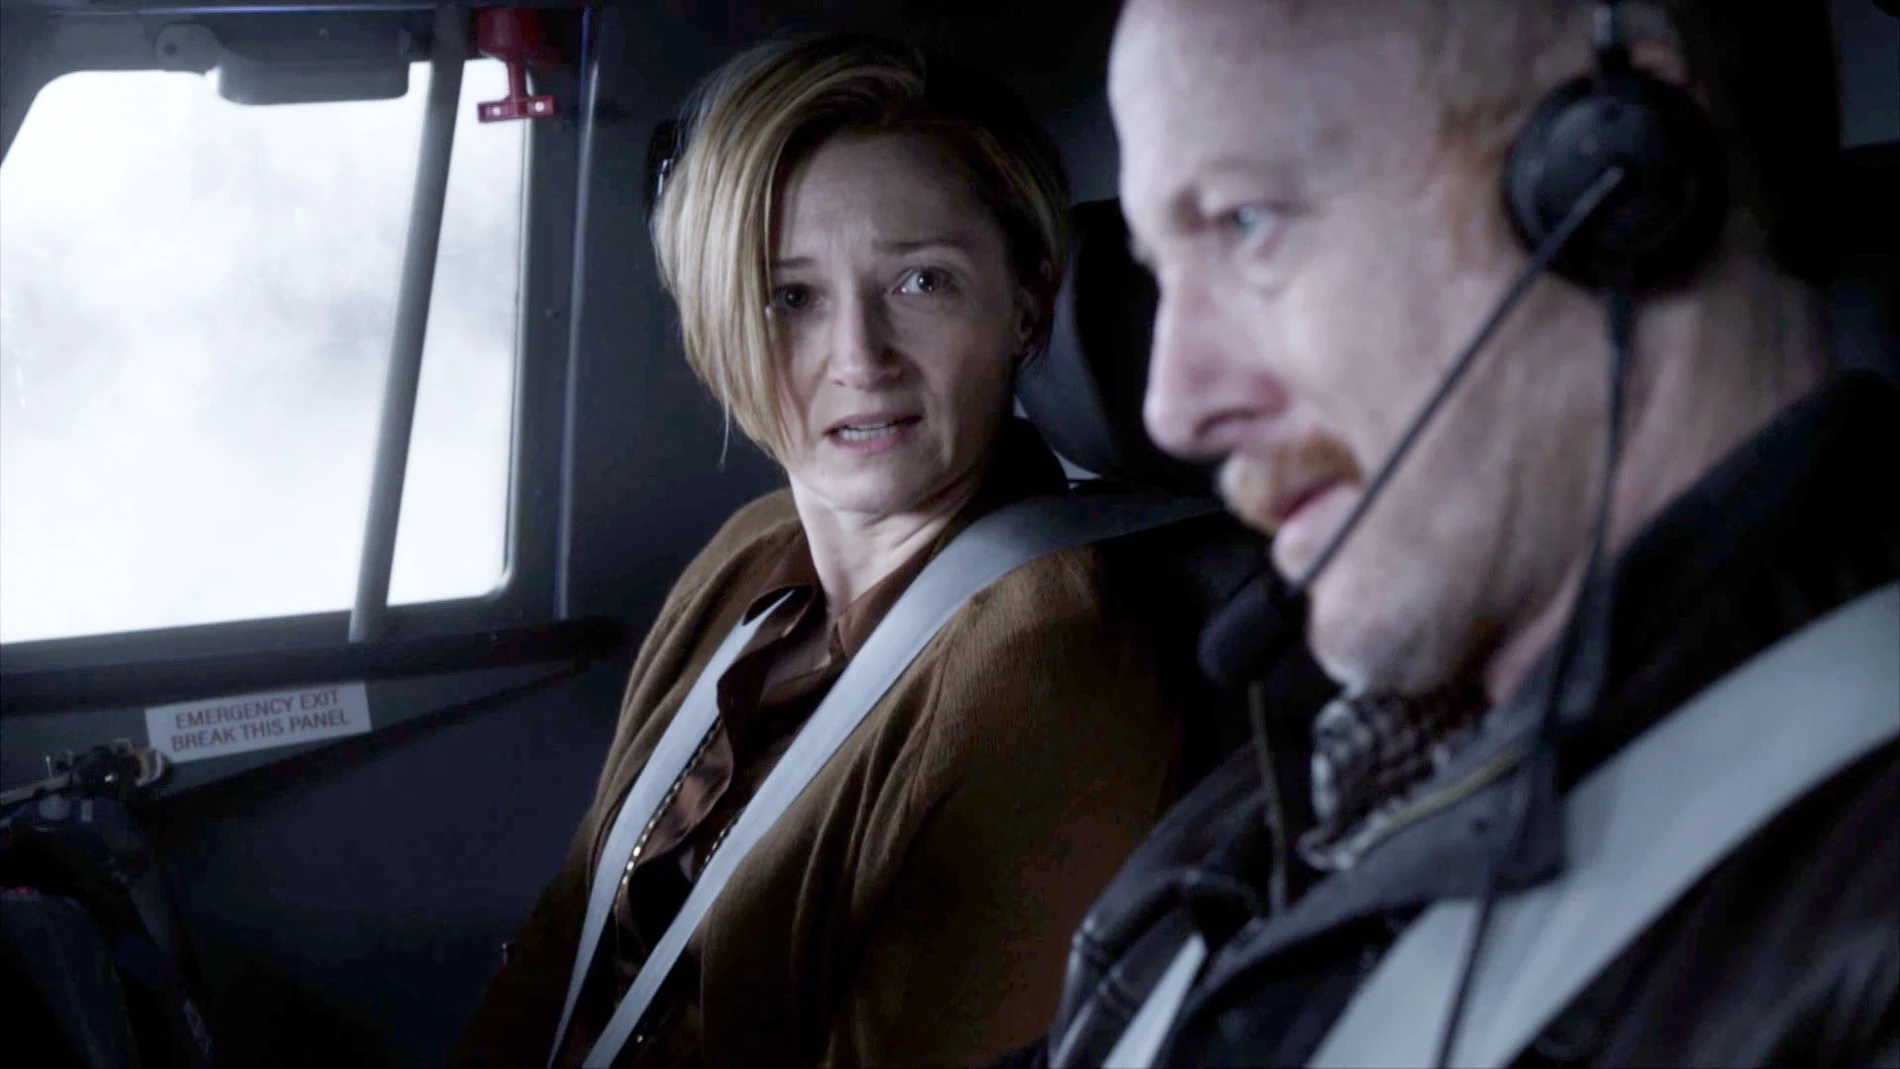 Vídeo: El capitán del vuelo 828 desaparece con Fiona en un avión